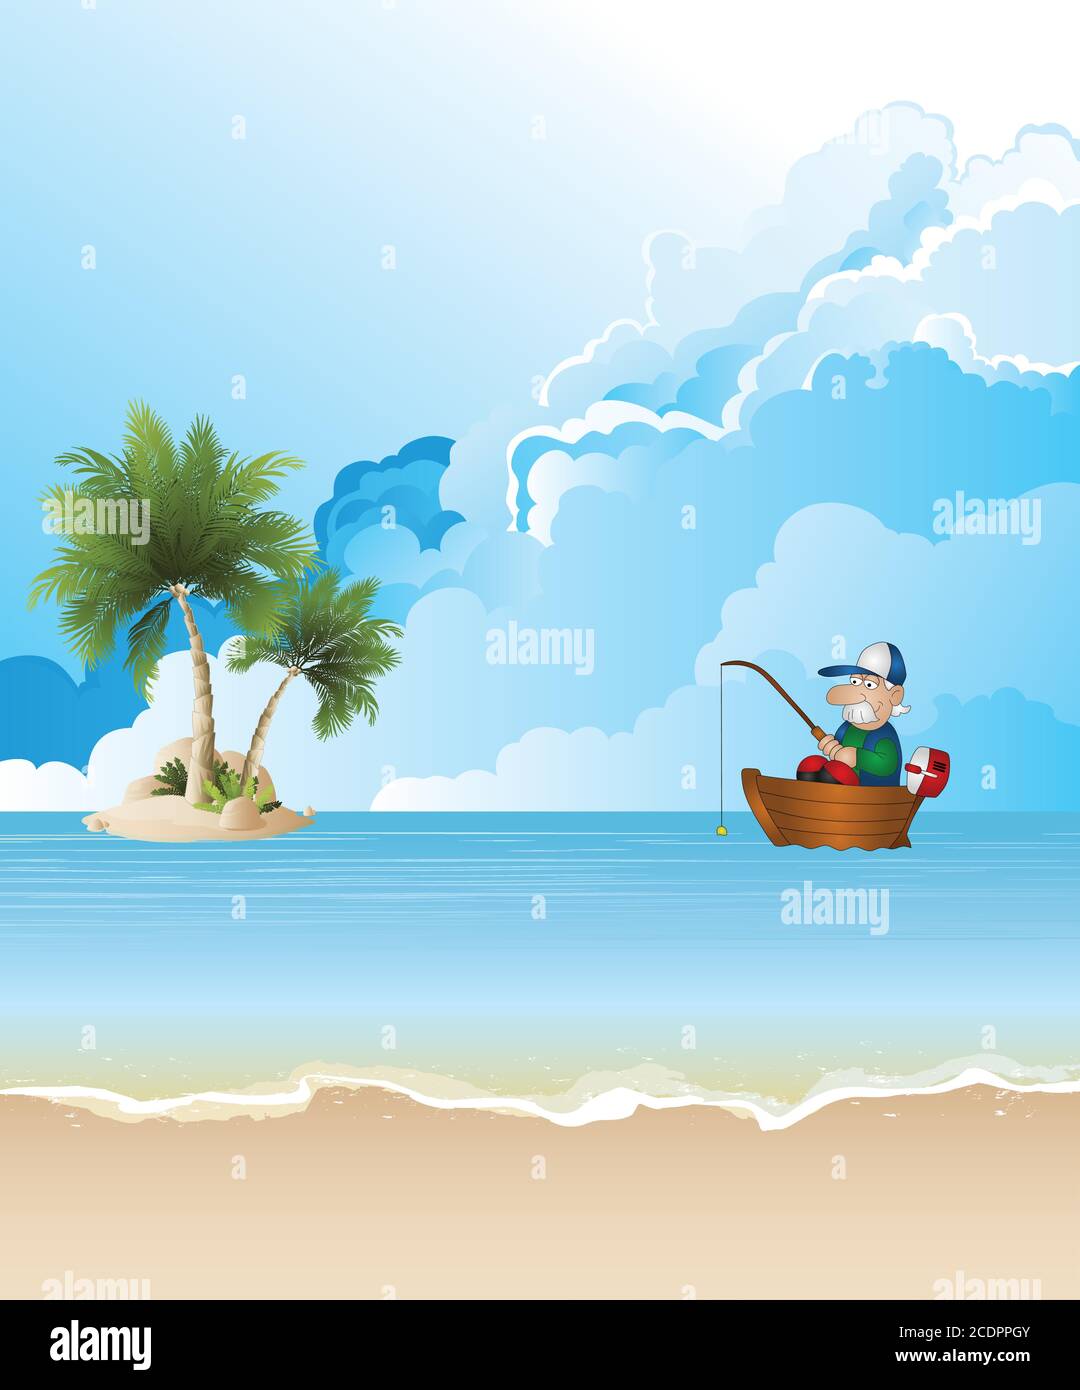 Pittoresca isola tropicale spiaggia scena con pescatore in barca set contro un cielo blu nuvoloso Illustrazione Vettoriale